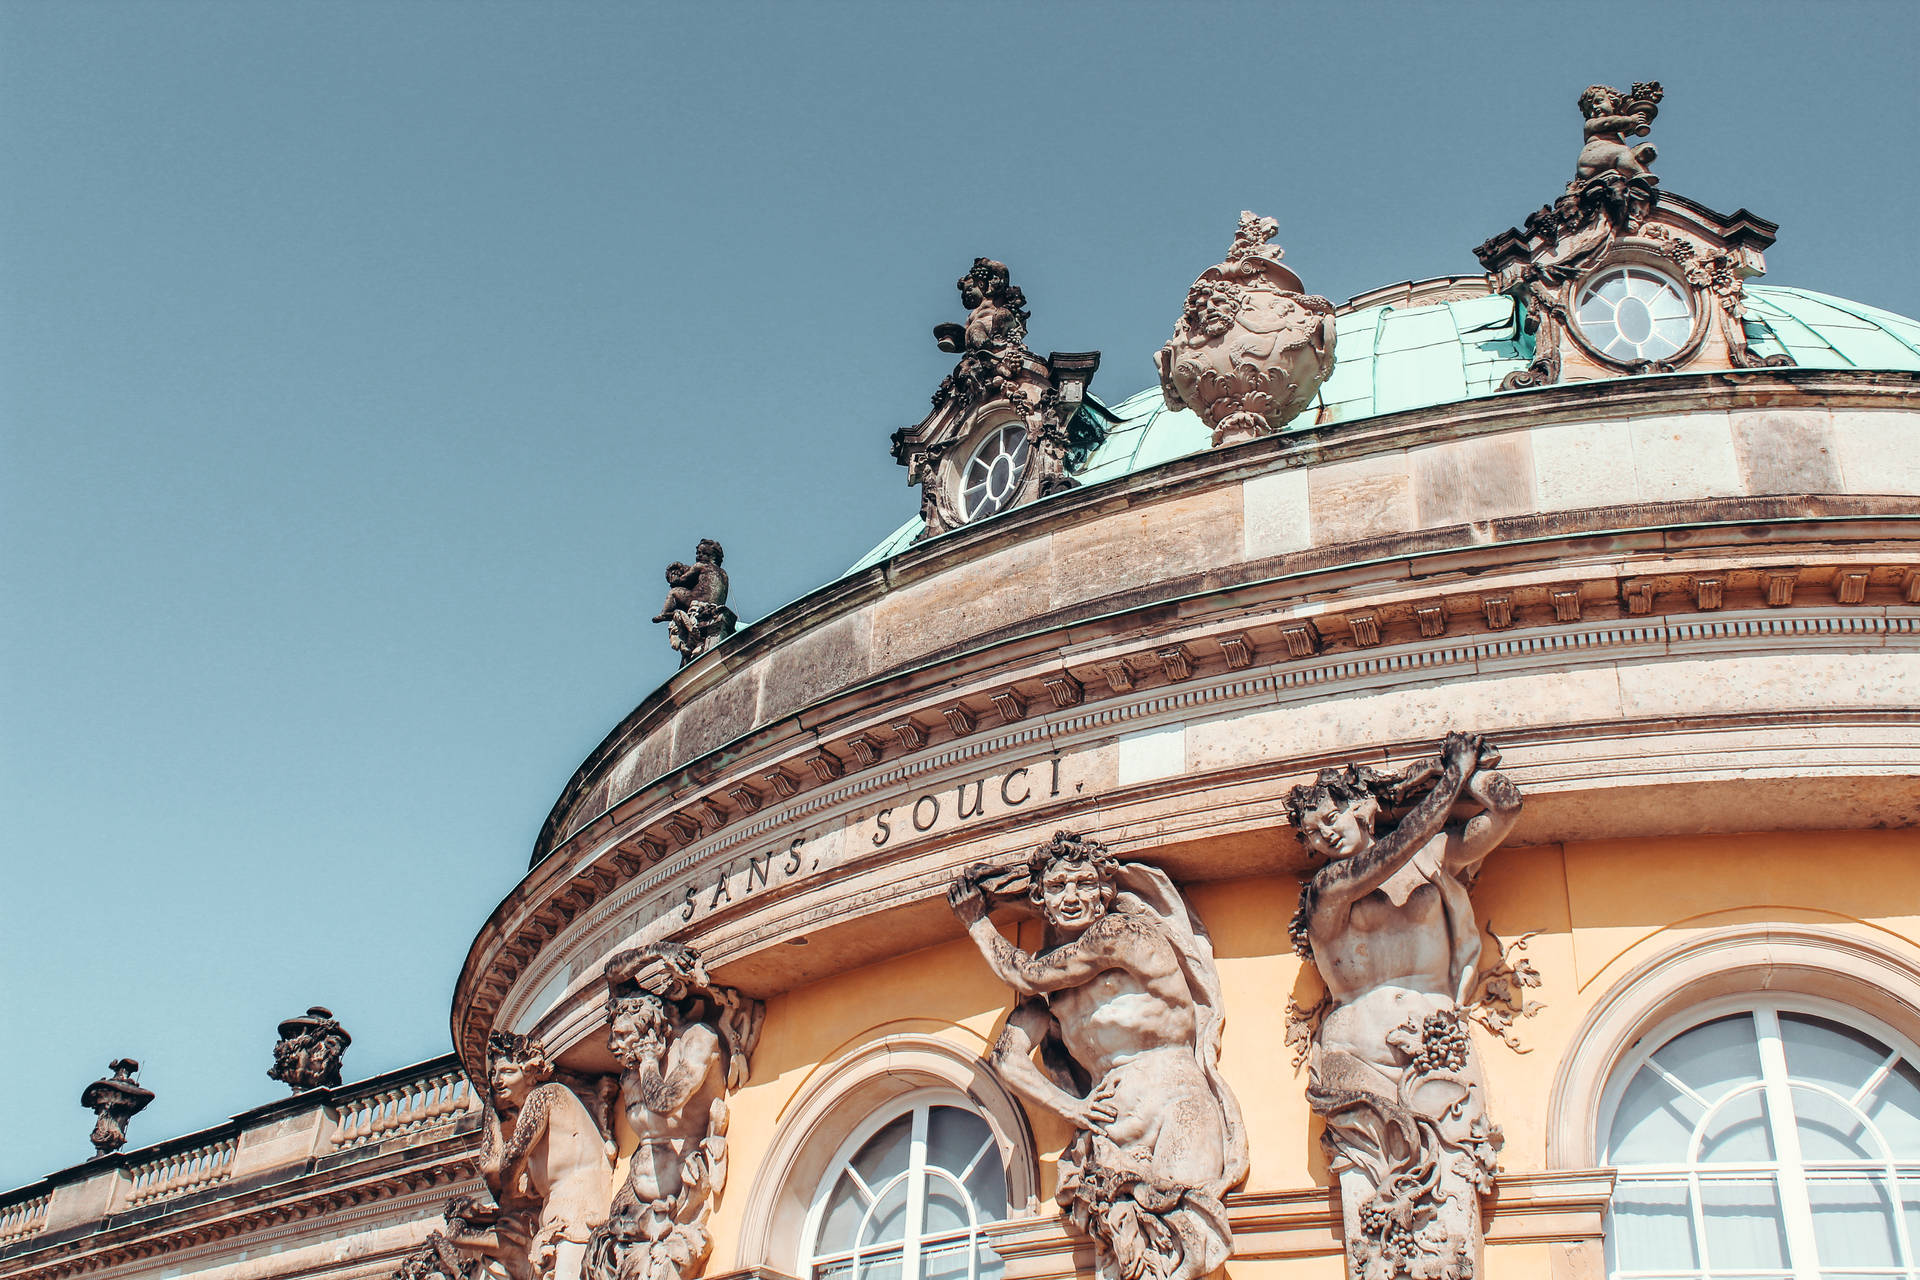 Dachskulpturenschloss Sanssouci Potsdam Wallpaper